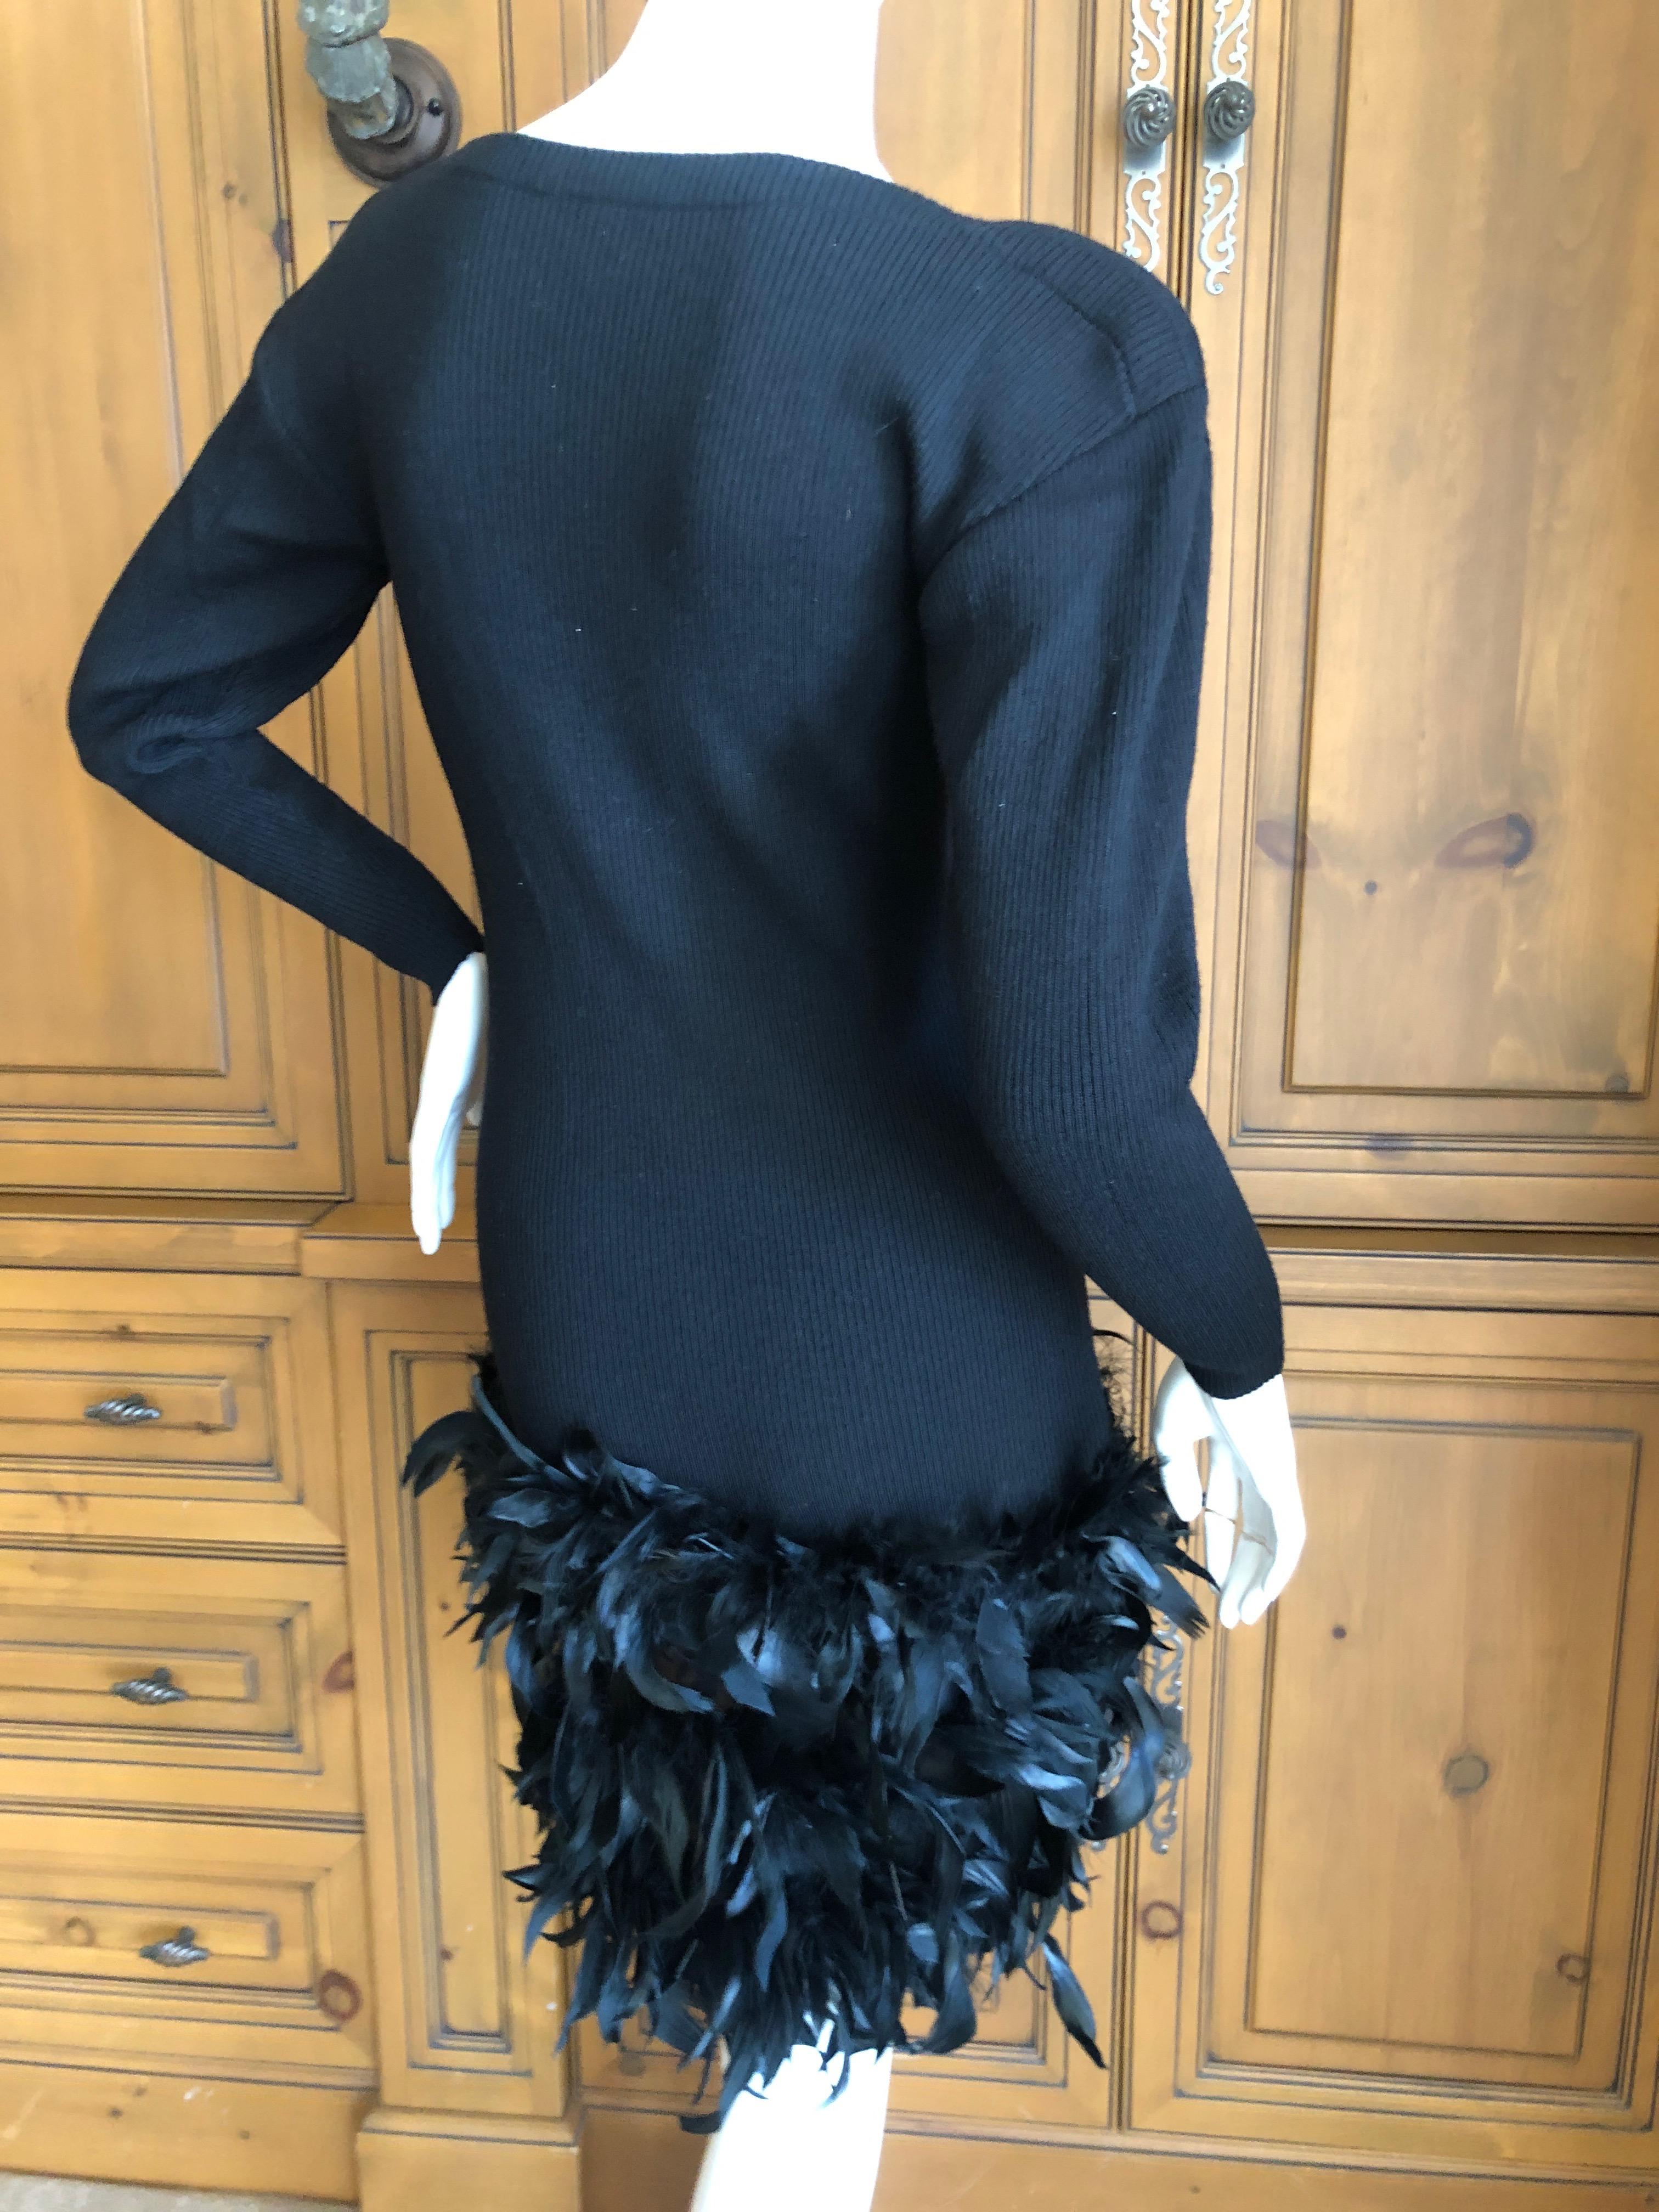 Yves Saint Laurent Rive Gauche Vintage Black Dress w Feathers by Maison Lamari For Sale 1